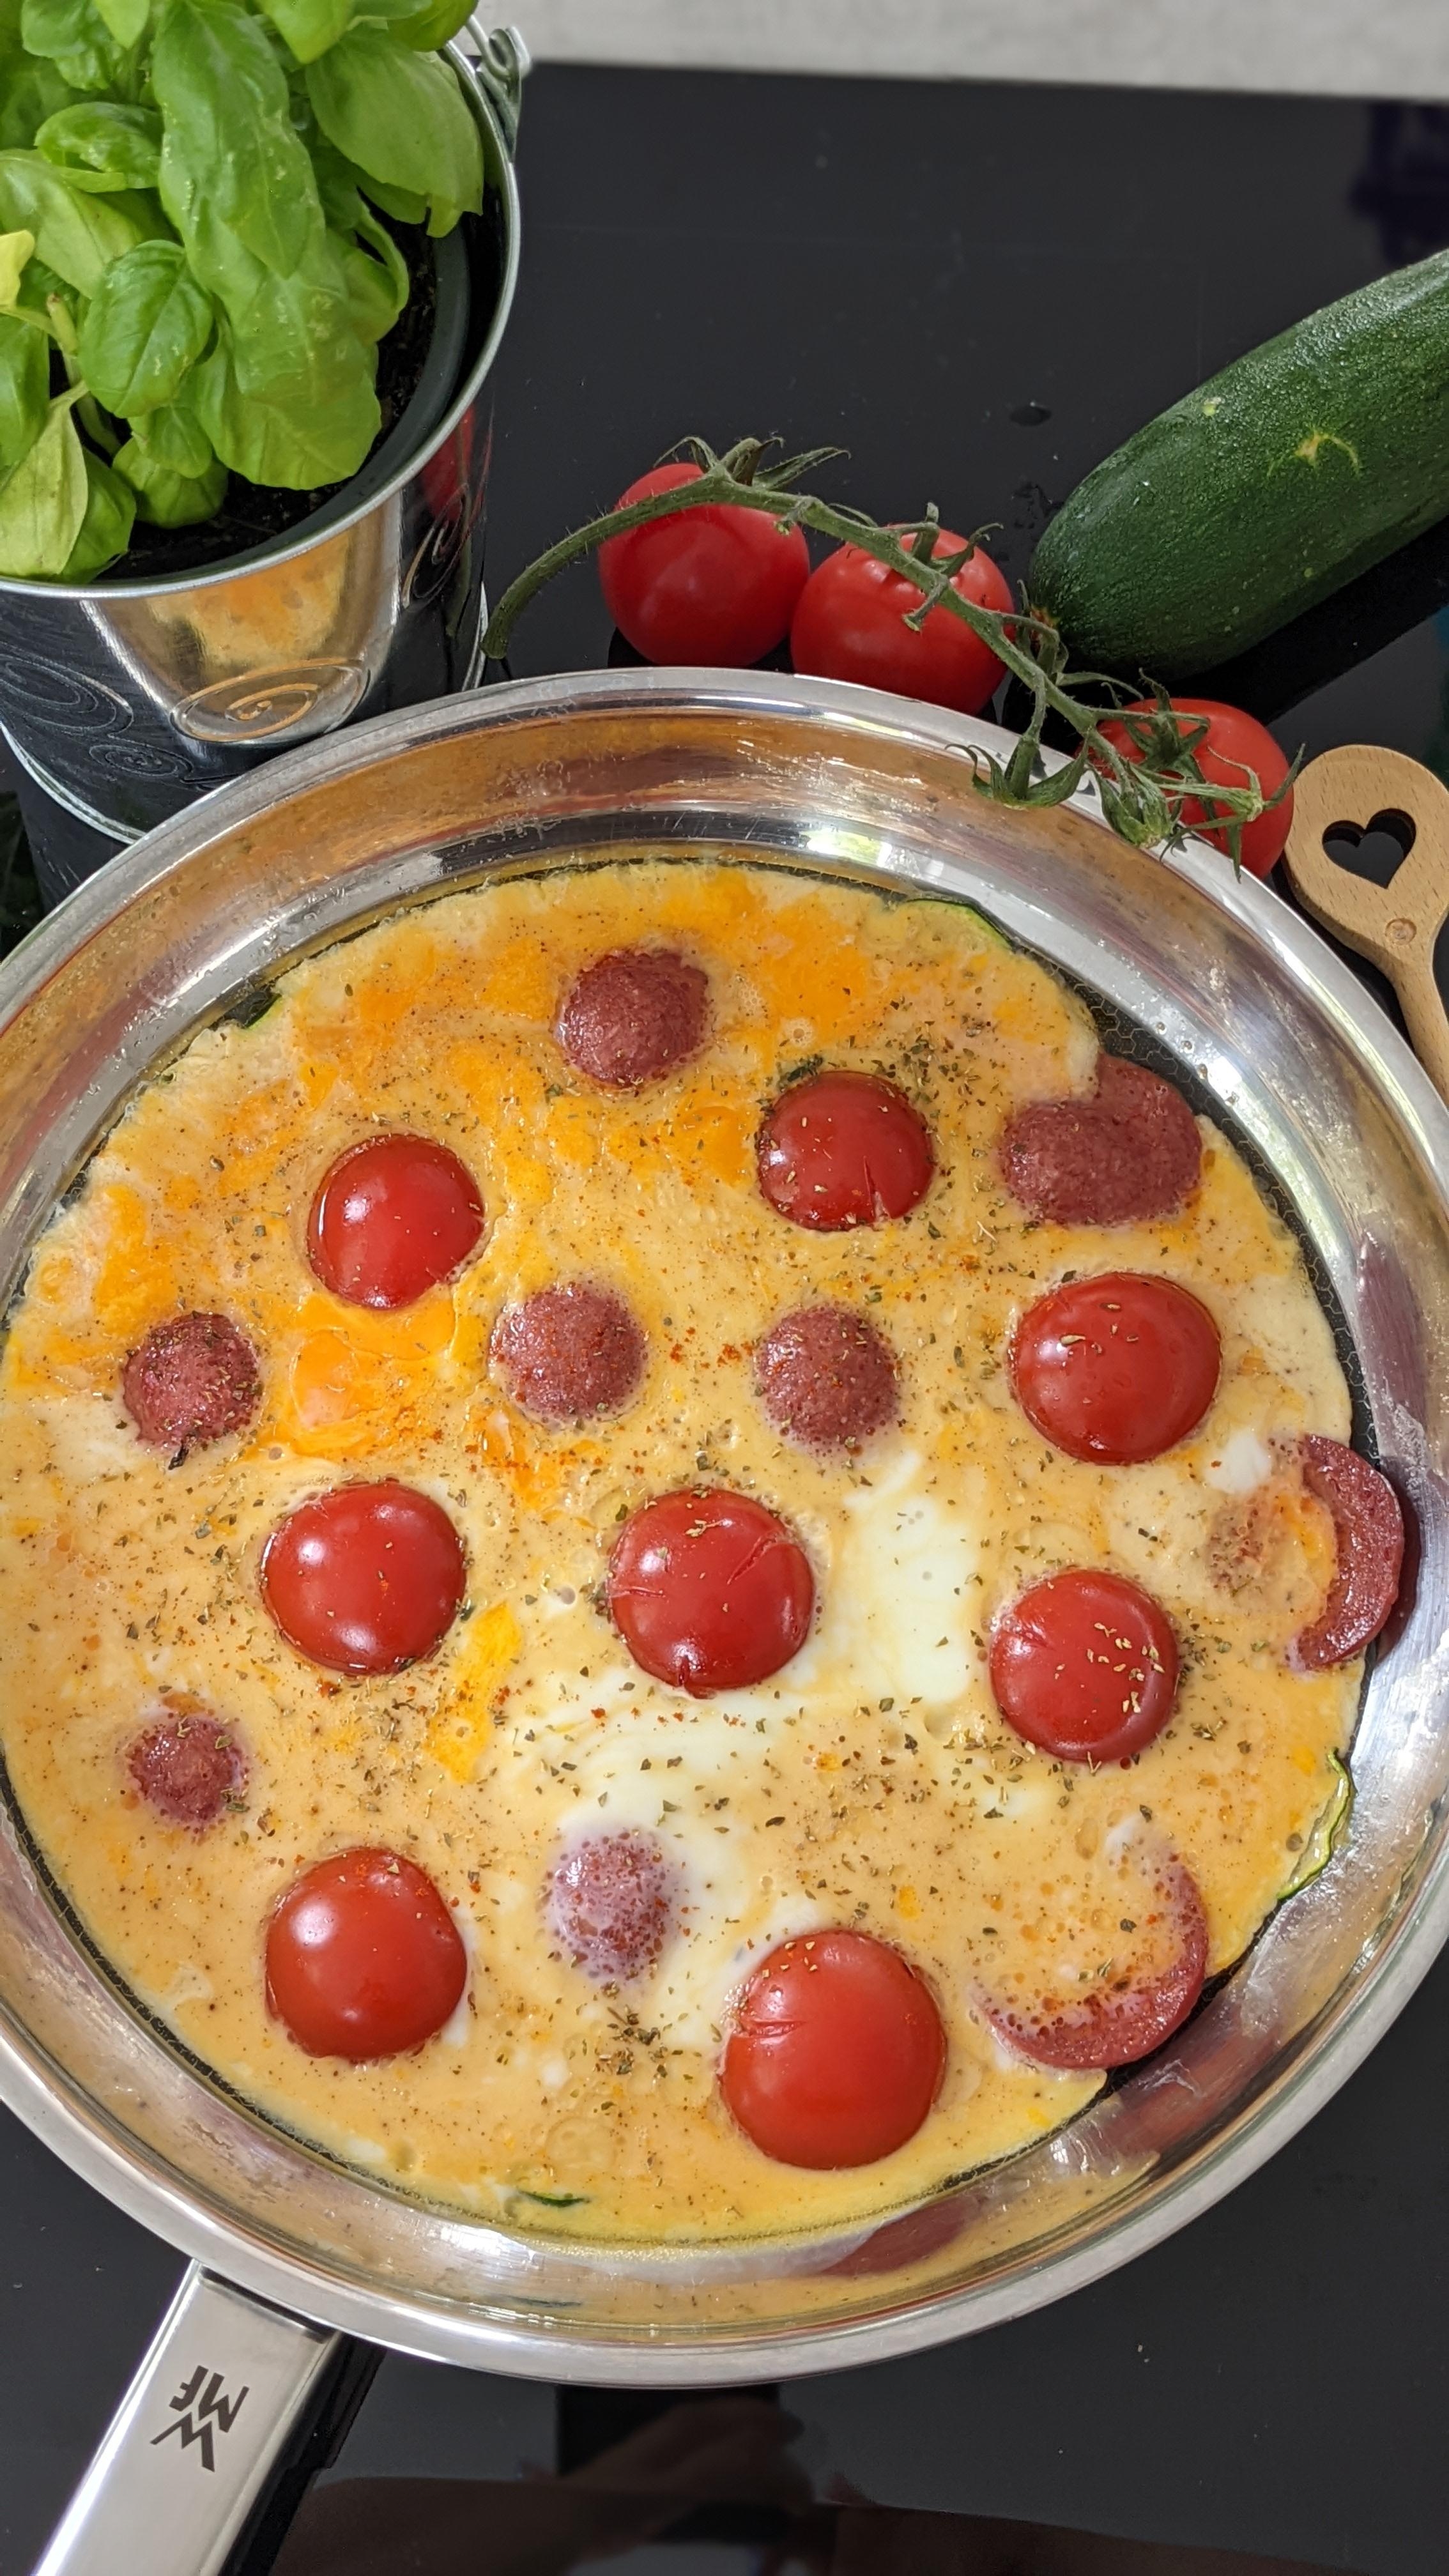 Sucuk Pfanne mit Tomaten Zucchini und Eiern.🍳
#foodie #brunch #frühstück #lecker